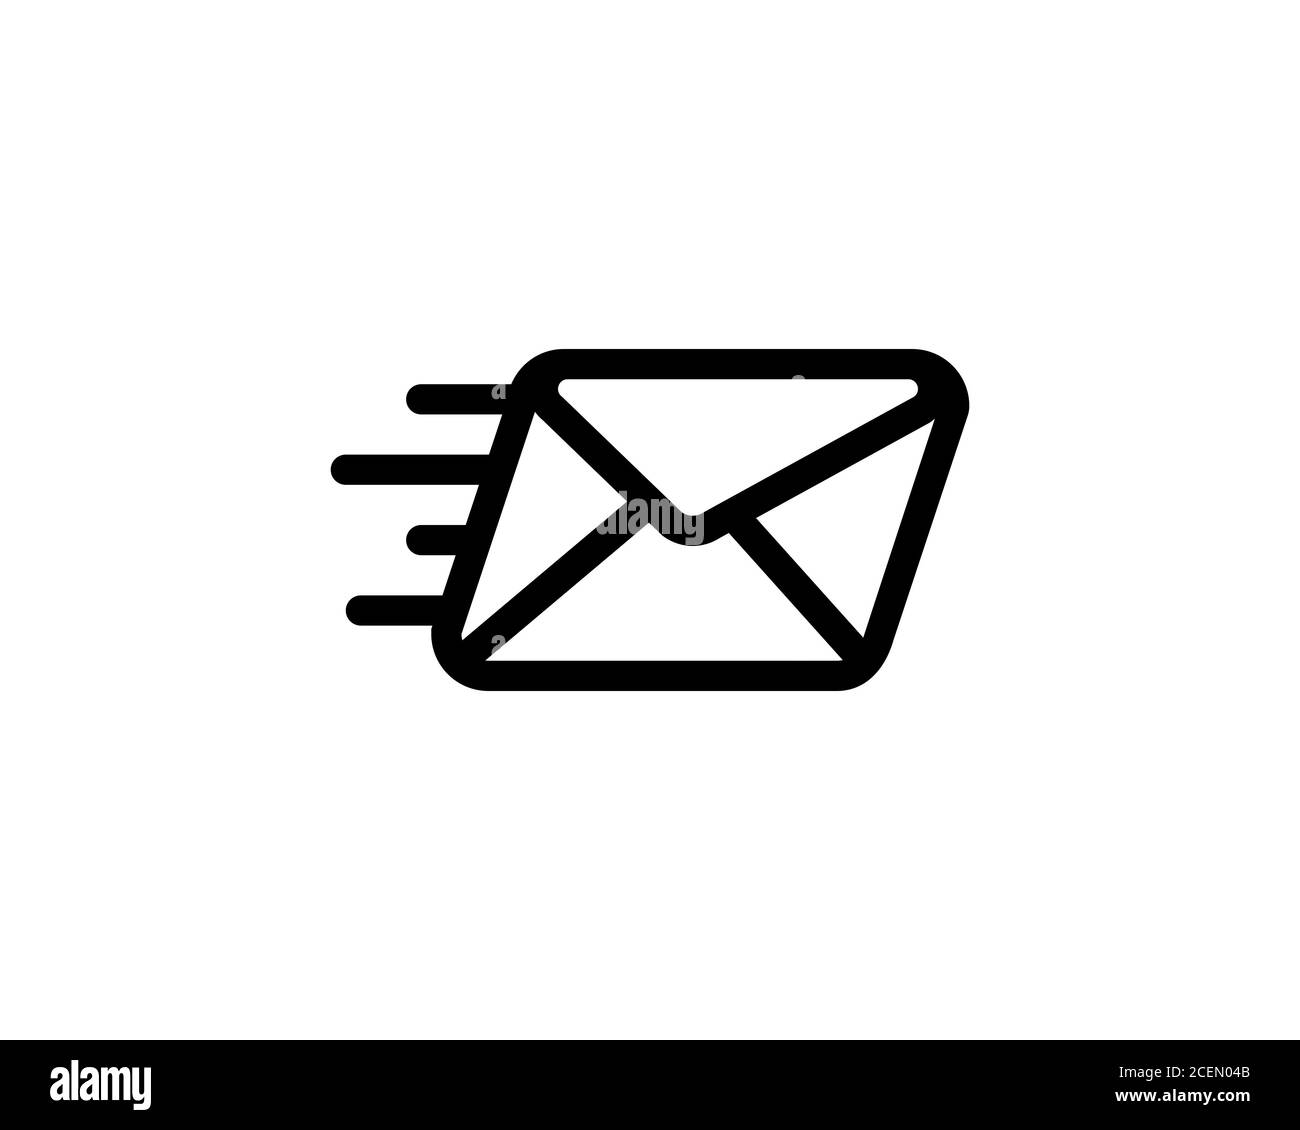 Symbol Nachricht senden. Senden eines Umschlags. Kurznachrichten. Symbol für schnelle E-Mail-Zustellung. Vektor auf isoliertem weißem Hintergrund. EPS 10 Stock Vektor